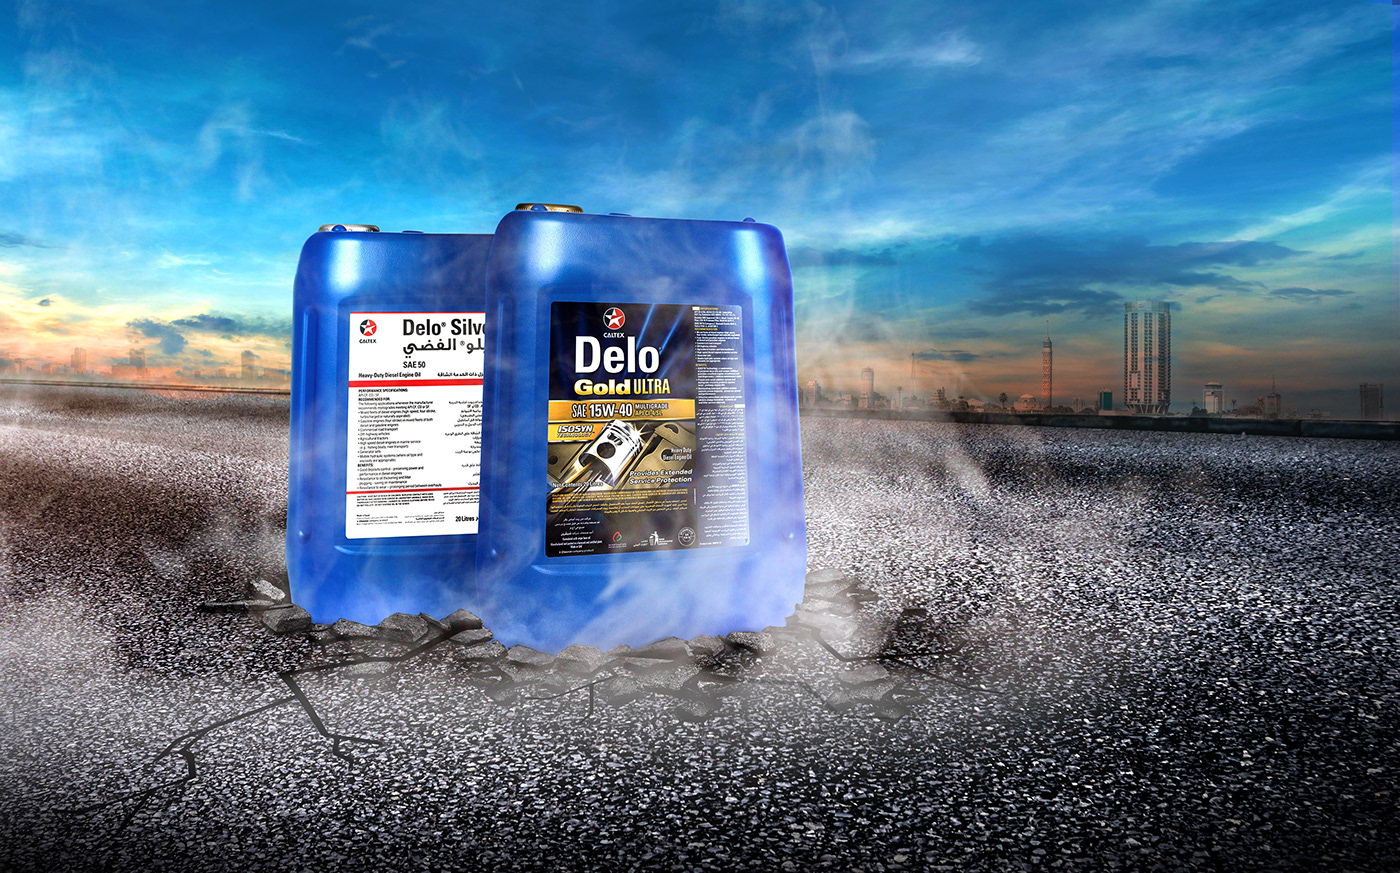 activation car Chevron DELO design jars oil road Roadshow visual